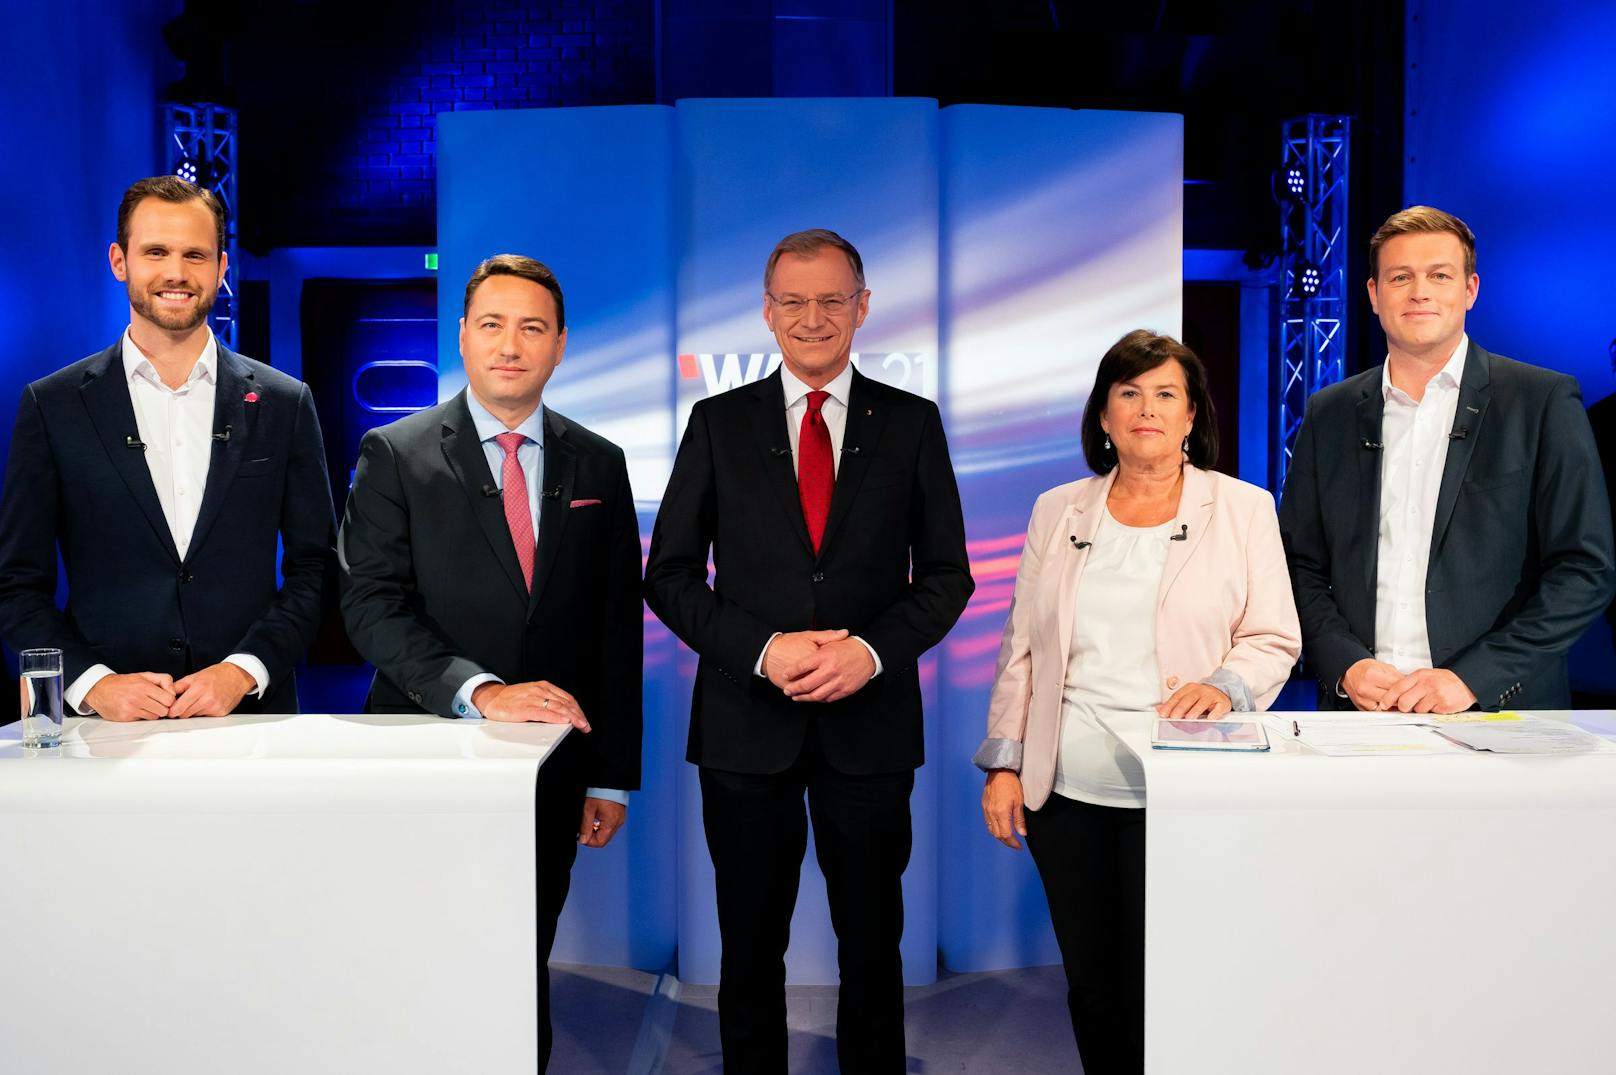 Die Spitzenkandidaten (v.li.): Eypeltauer, Haimbuchner, Stelzer, Gerstorfer, Kaineder